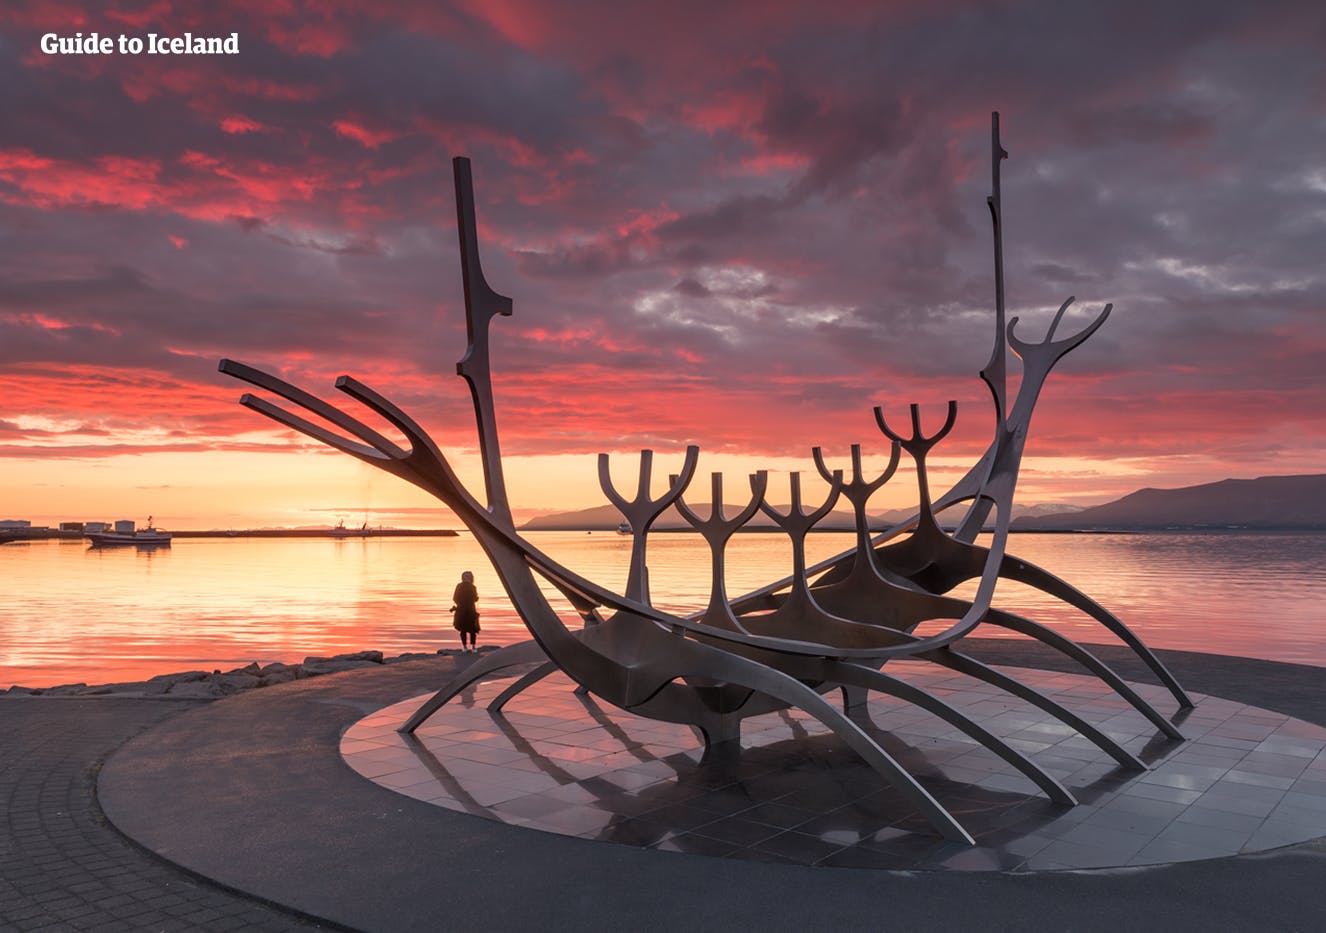 Het Sun Voyager Monument gefotografeerd bij zonsondergang in de zomer aan de kust van Reykjavik.